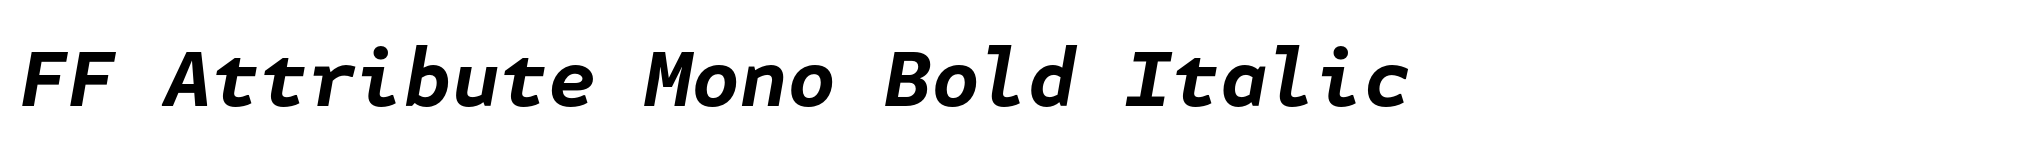 FF Attribute Mono Bold Italic image